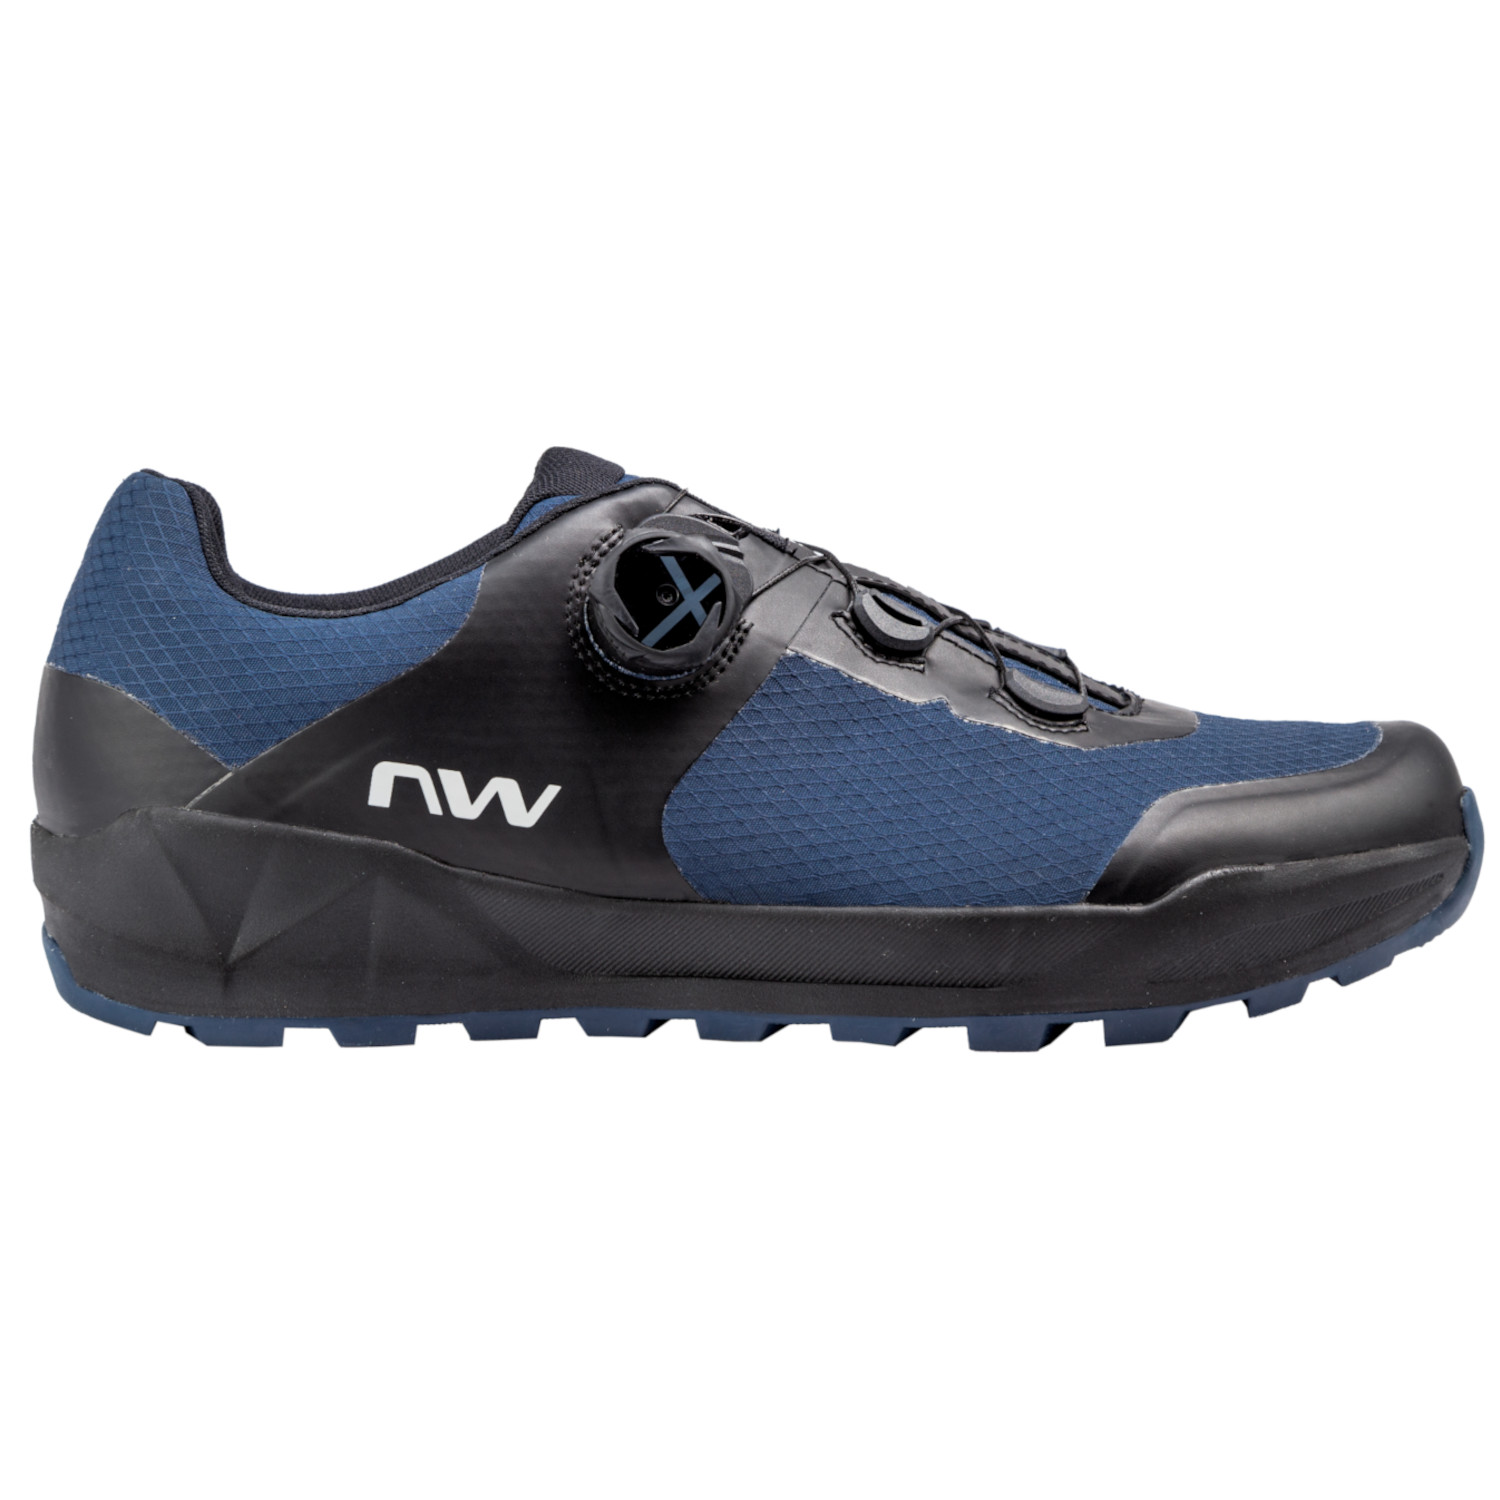 Produktbild von Northwave Corsair 2 All Terrain Schuhe Herren - deep blue/black 22